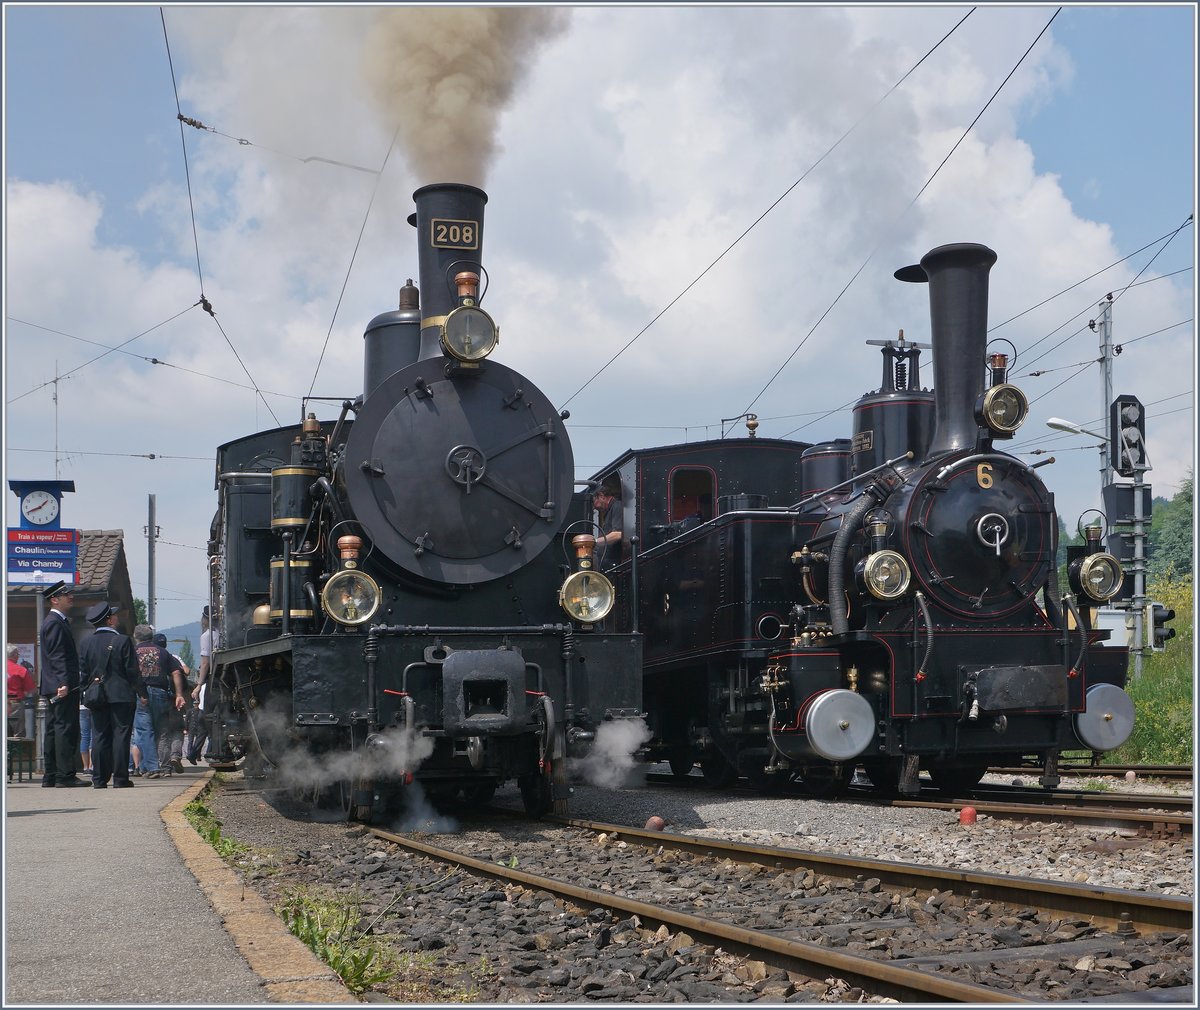 50 Jahre Blonay - Chamby; Mega Steam Festival: die beiden Brünigbahn Dampfloks SBB G 3/4 (1913) und die JS 3/3 909 (1901) in Blonay.
19. Mai 2018